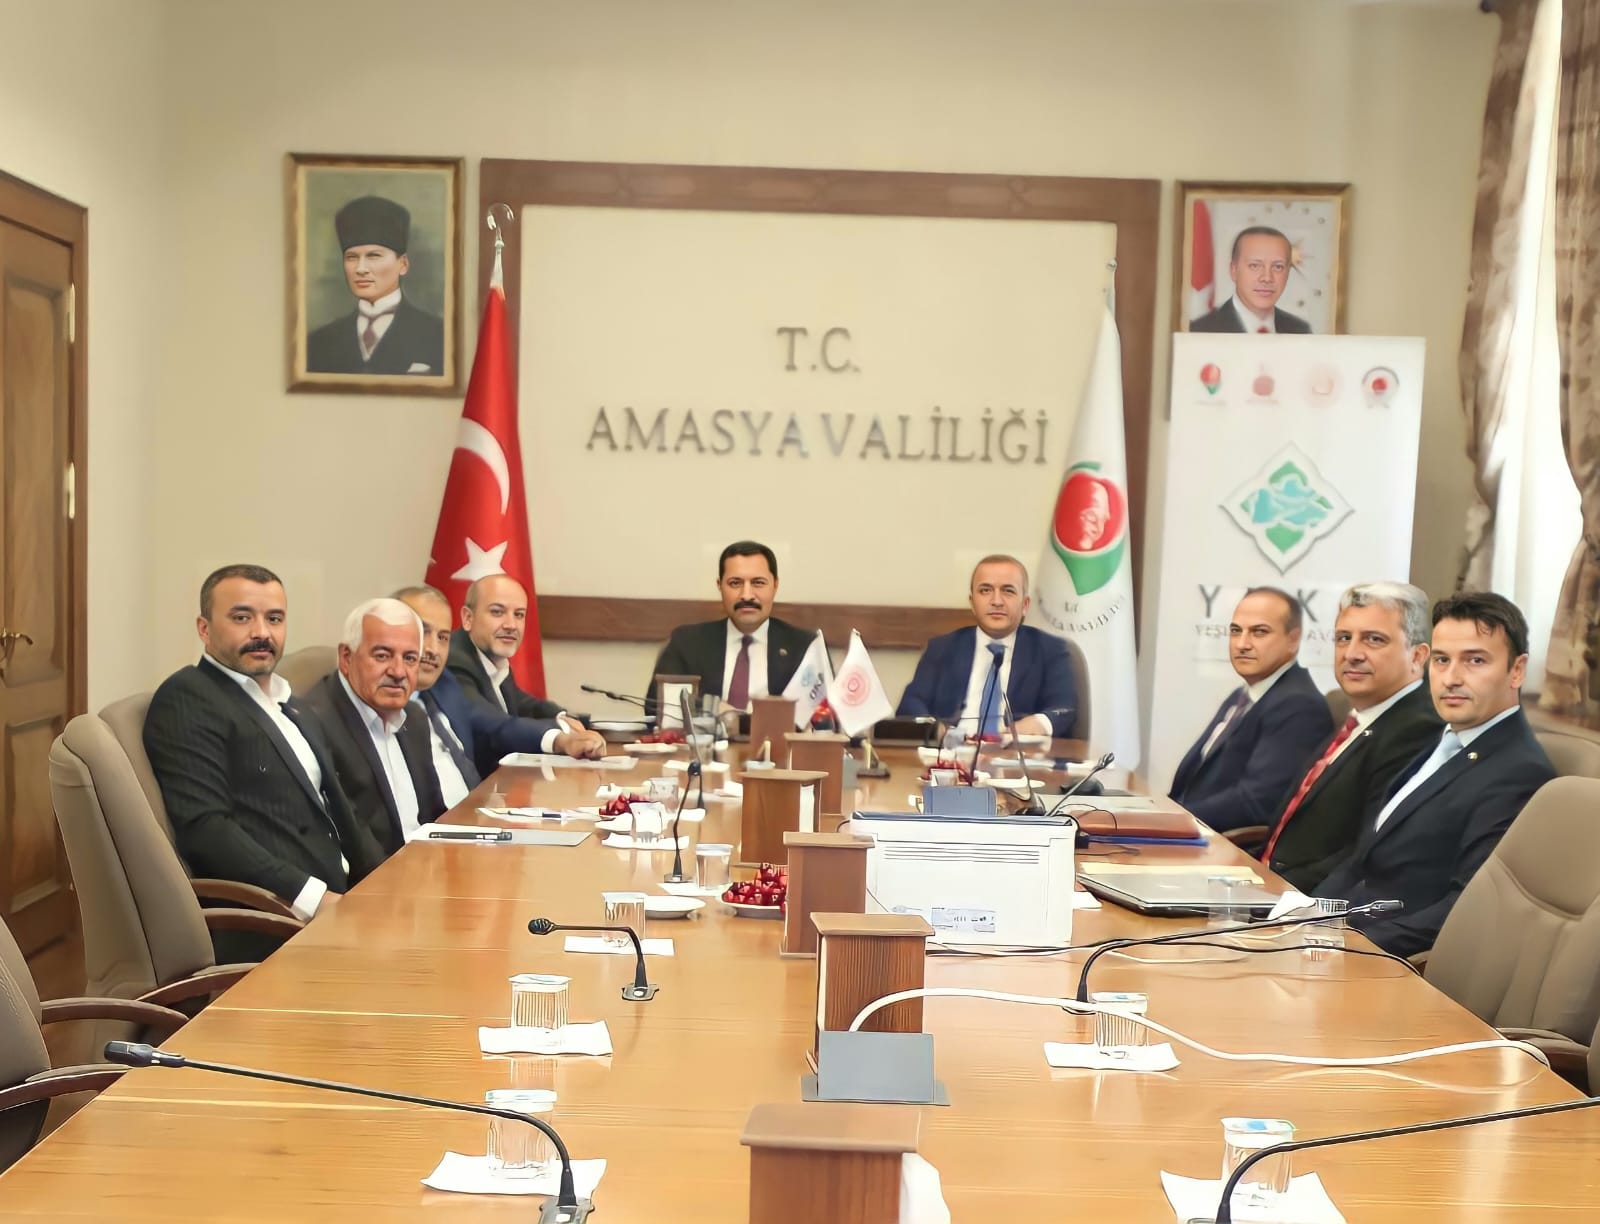 Yeşilırmak Havzası Kalkınma Birliği Mayıs Ayı Encümen ve Meclis Toplantısı, Amasya Valisi Mustafa MASATLI’nın Başkanlığında Amasya İlinde Gerçekleştirildi